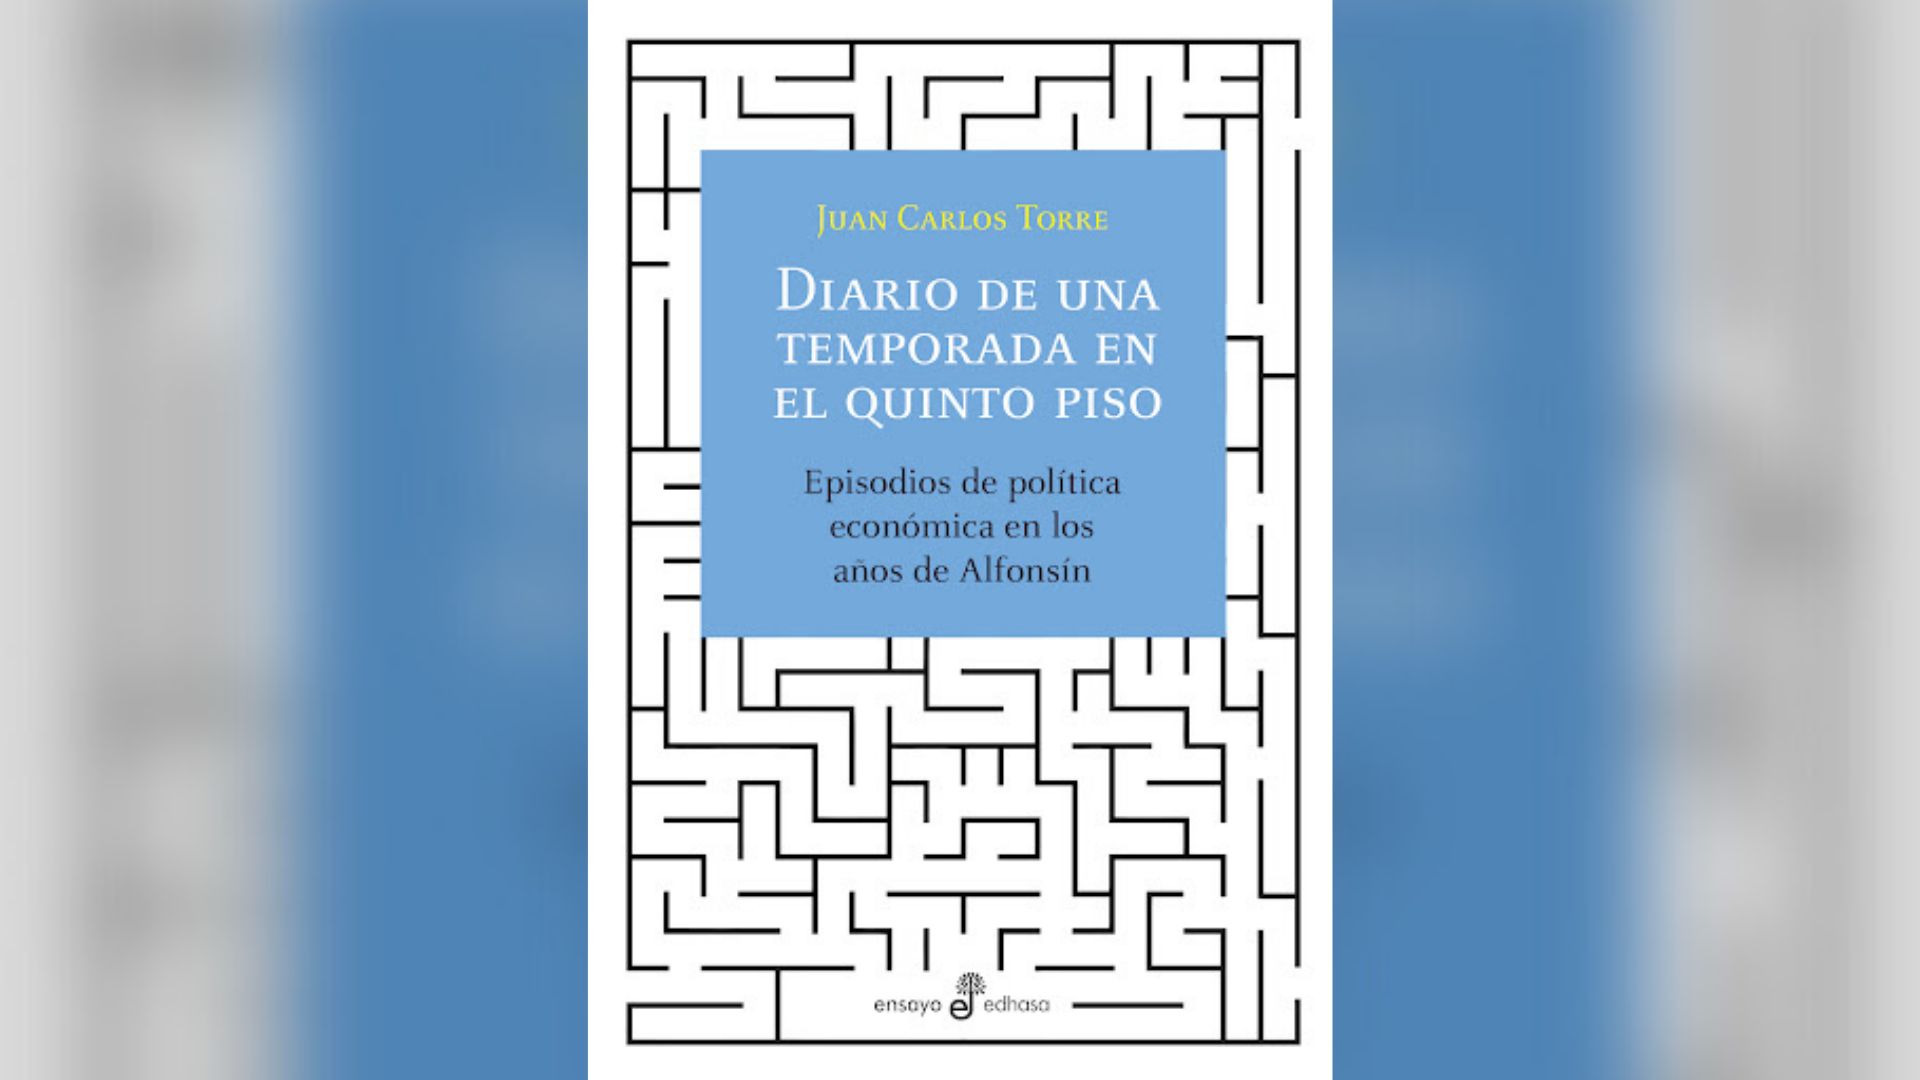 Facsímil de la tapa del libro Diario de una temporada en el quinto piso, de Juan Carlos Torre (Edhasa)